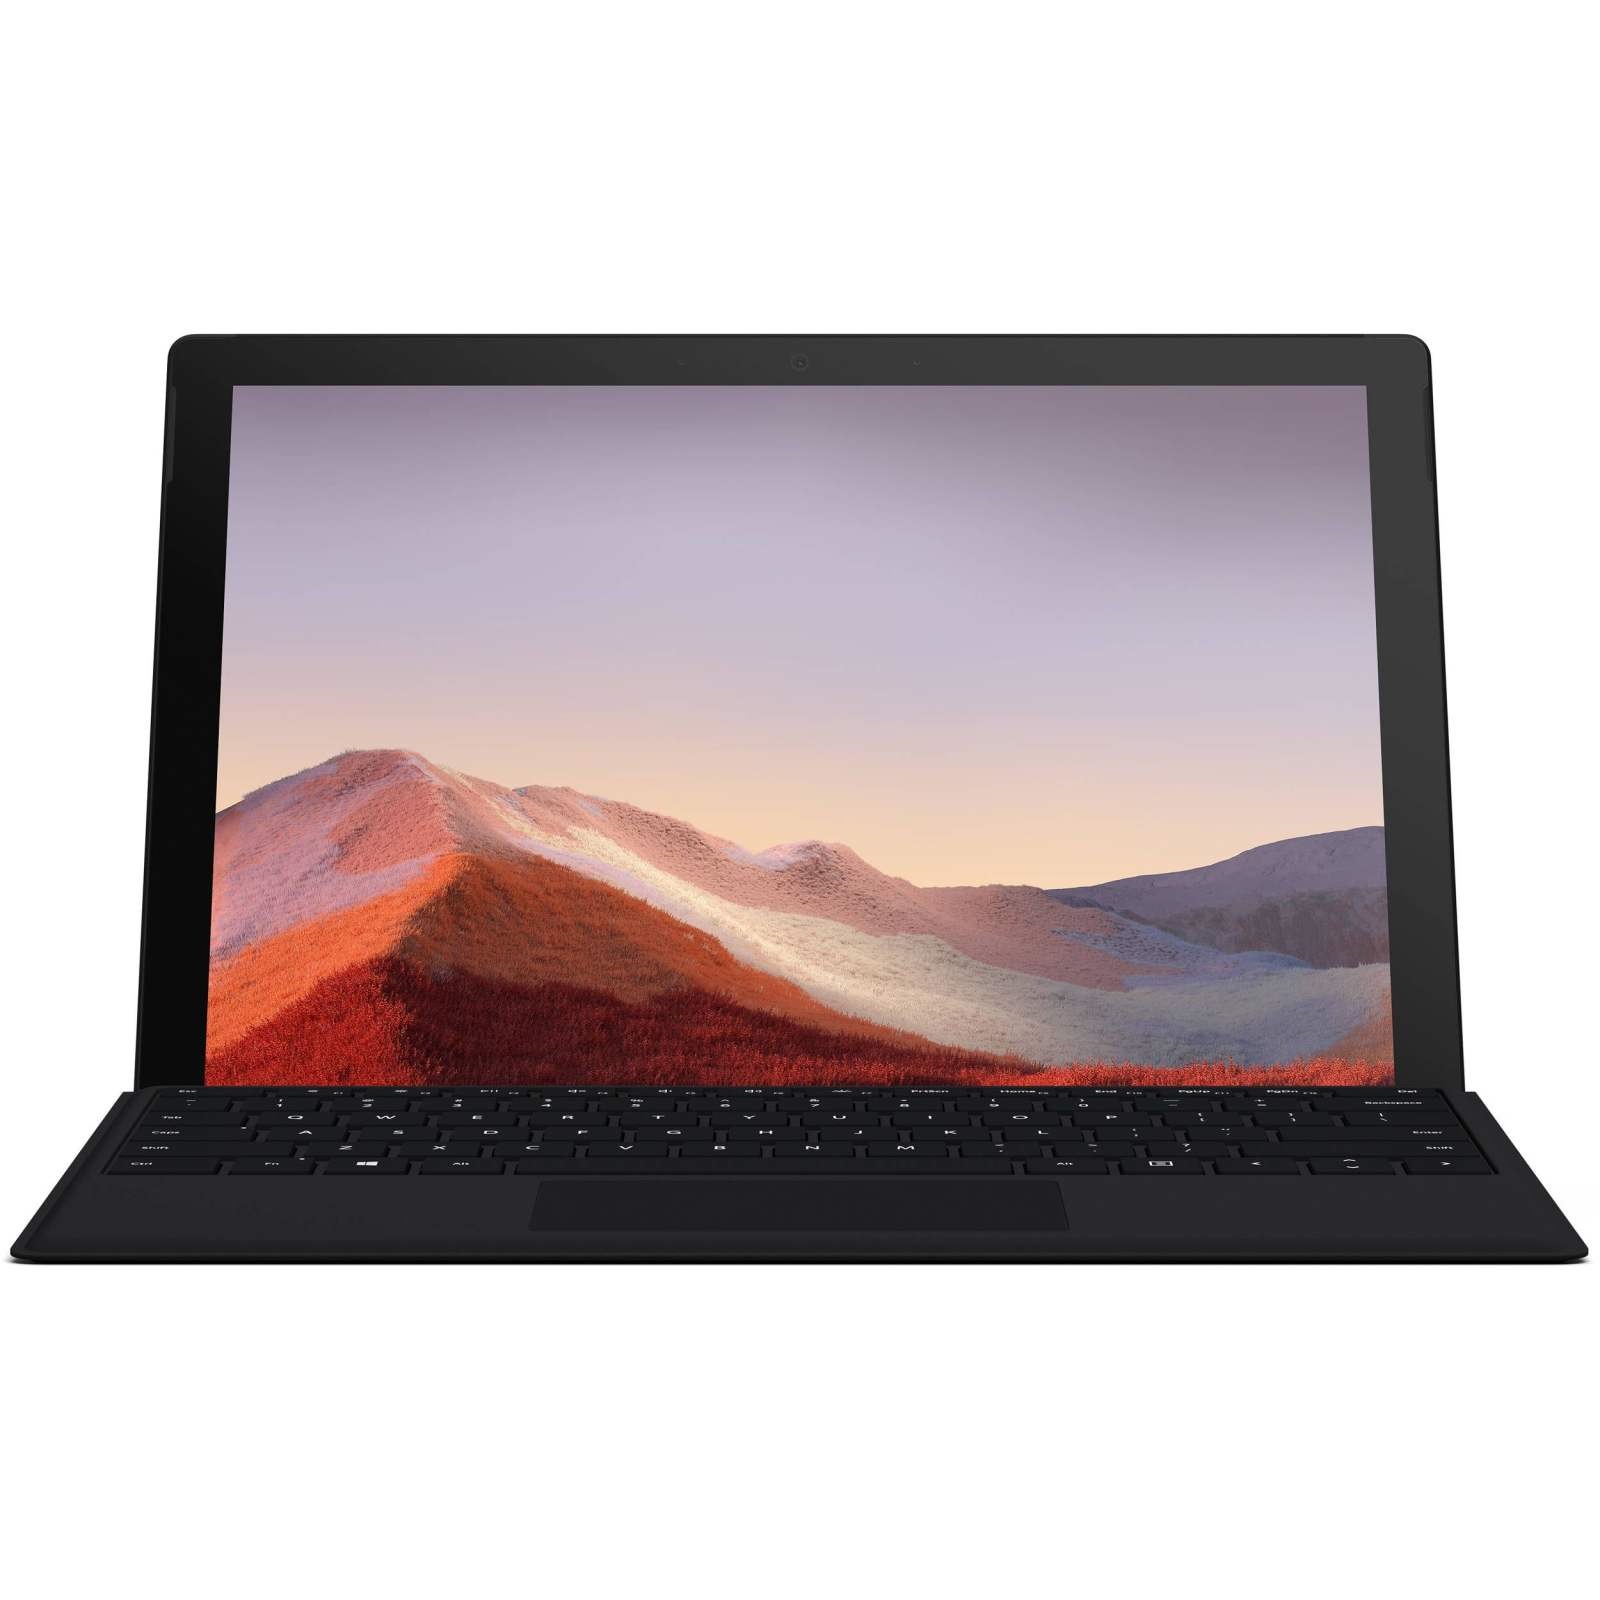 تبلت مایکروسافت مدل Surface Pro 7 Plus ظرفیت 128 گیگابایت به همراه کیبورد Black Type Cover